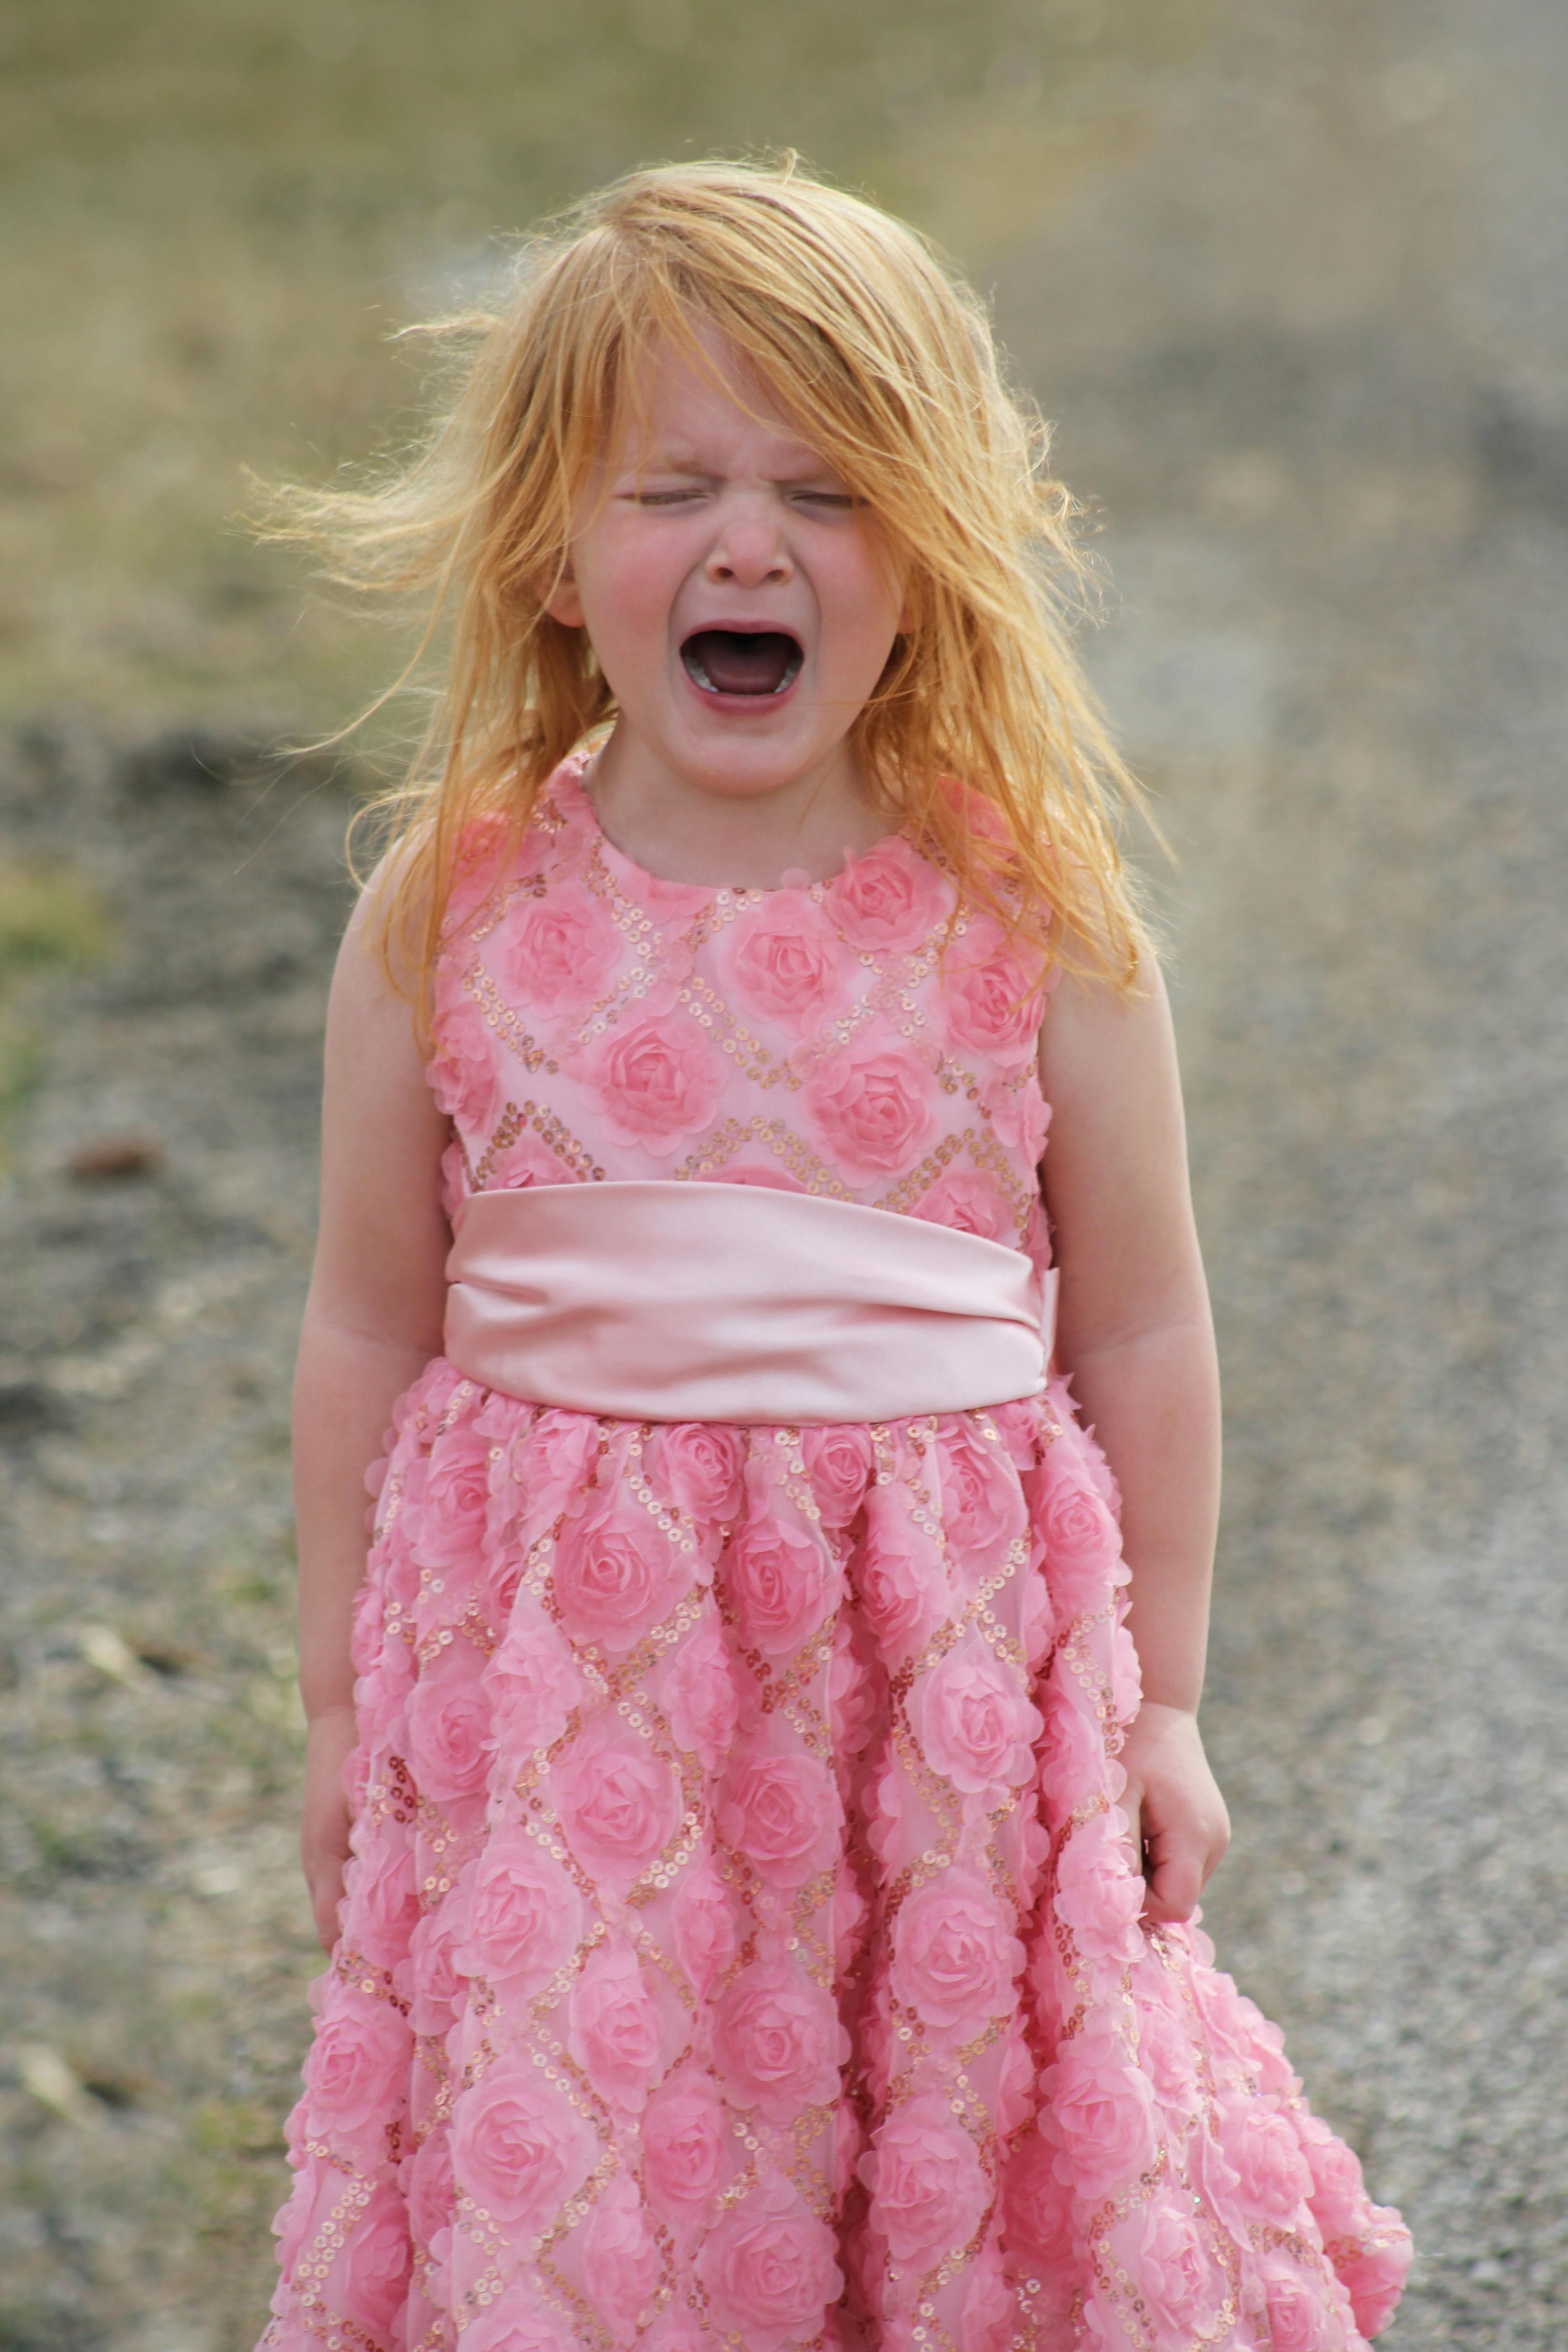 Une petite fille qui pleure alors qu'elle est dehors | Source : Pexels